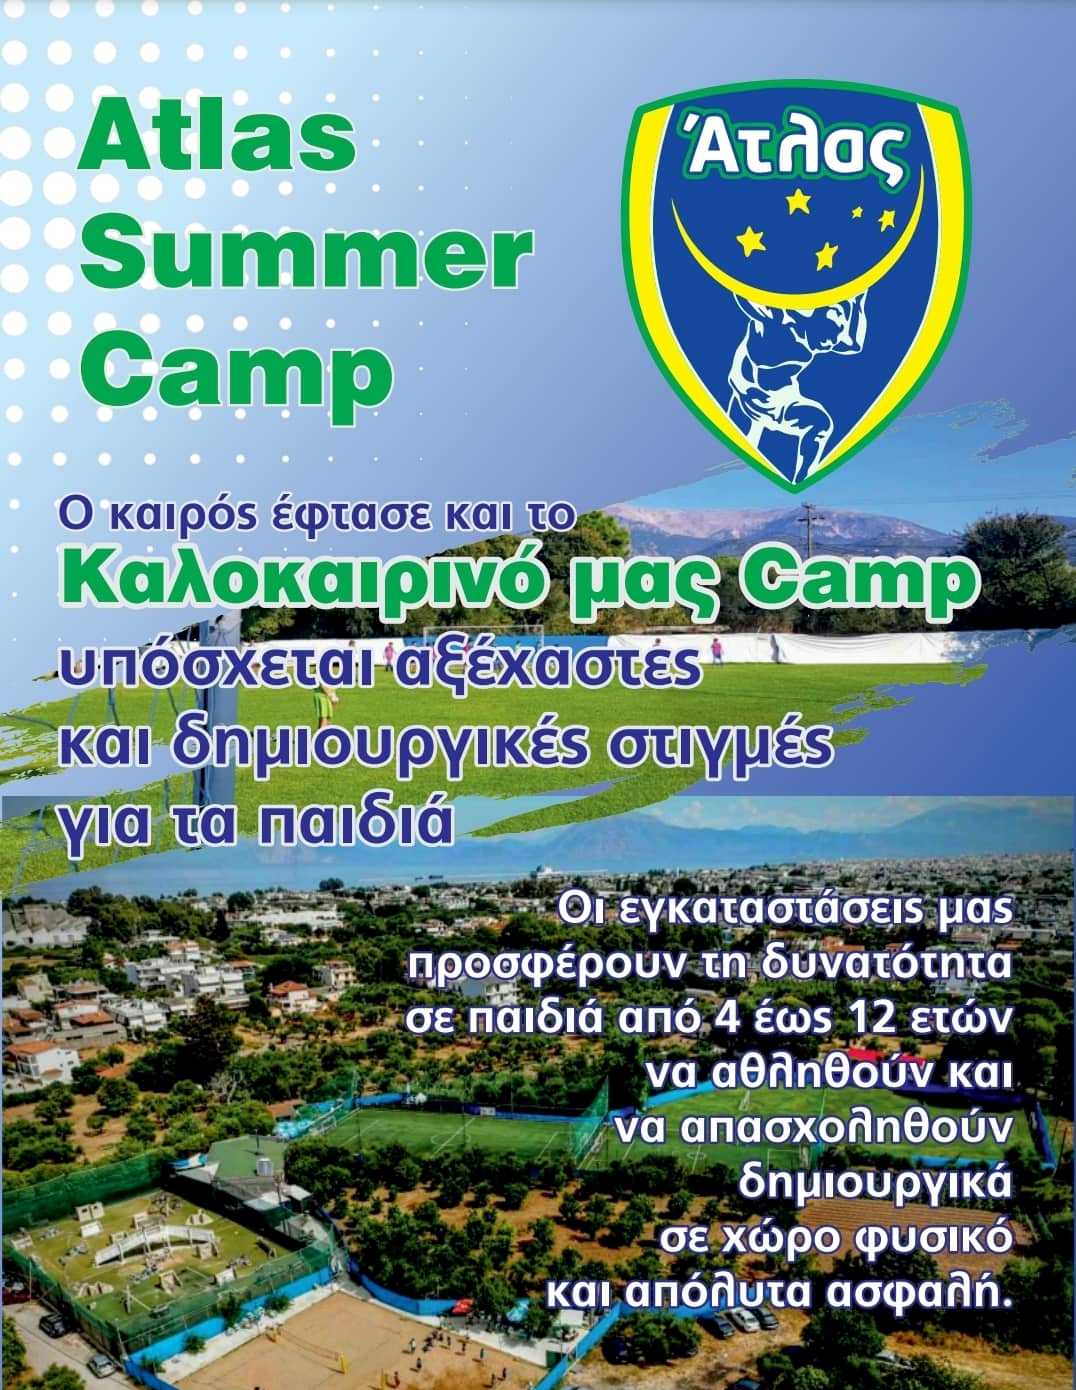 Ερχεται το Atlas Summer Camp για παιδιά 4-12 ετών